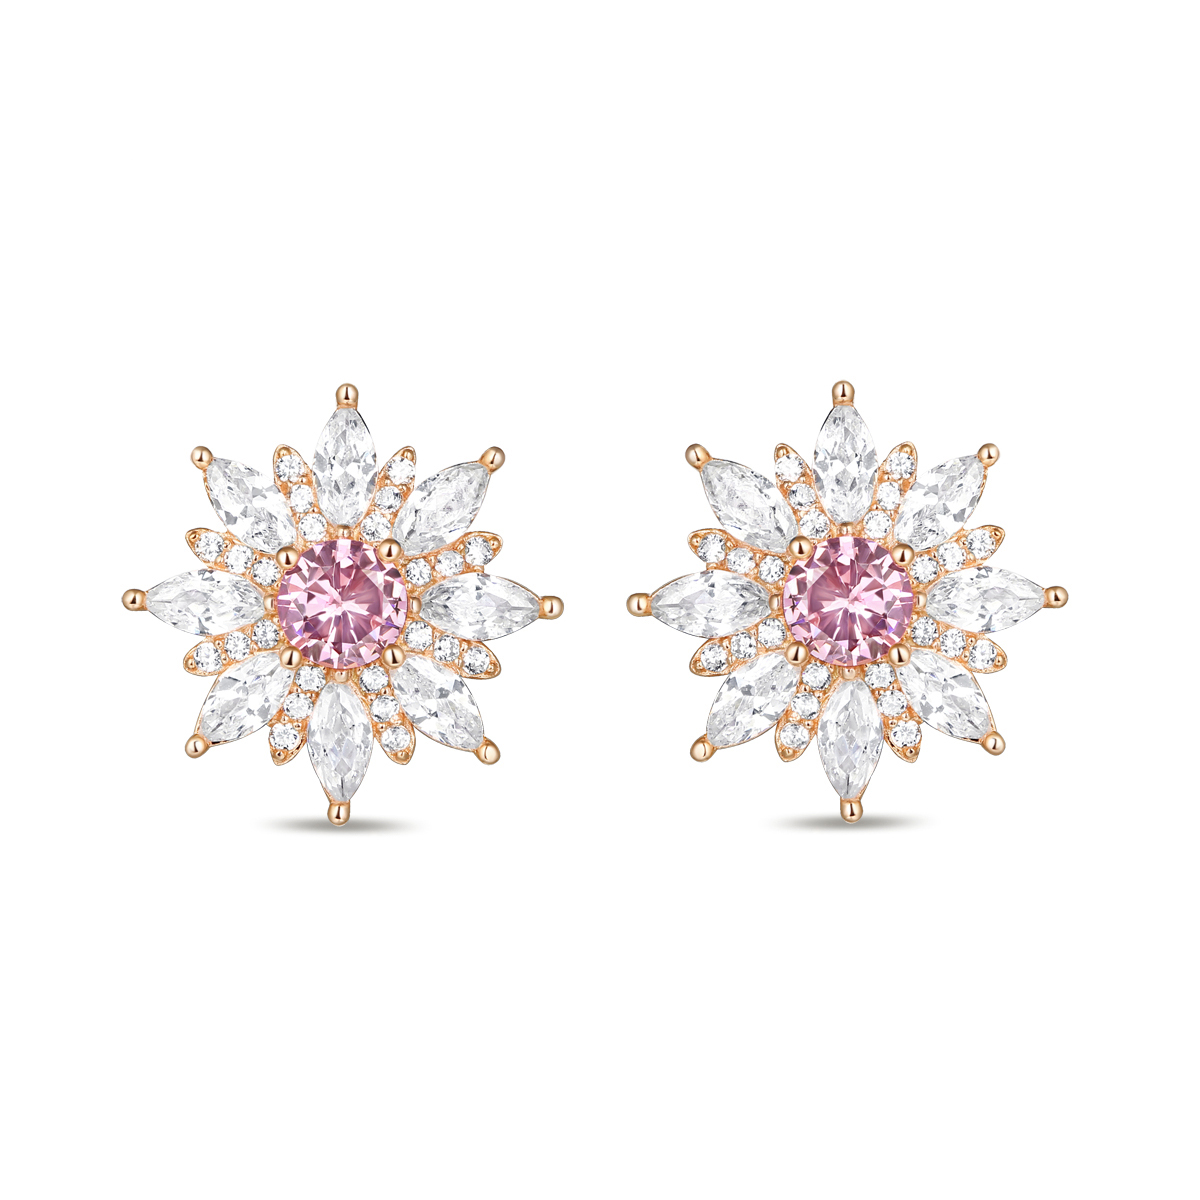 SE187 Daisy Eternal Flower Stud Swarovski Cubic Zirconia 925 Silver Earrings Jewelry Collection 